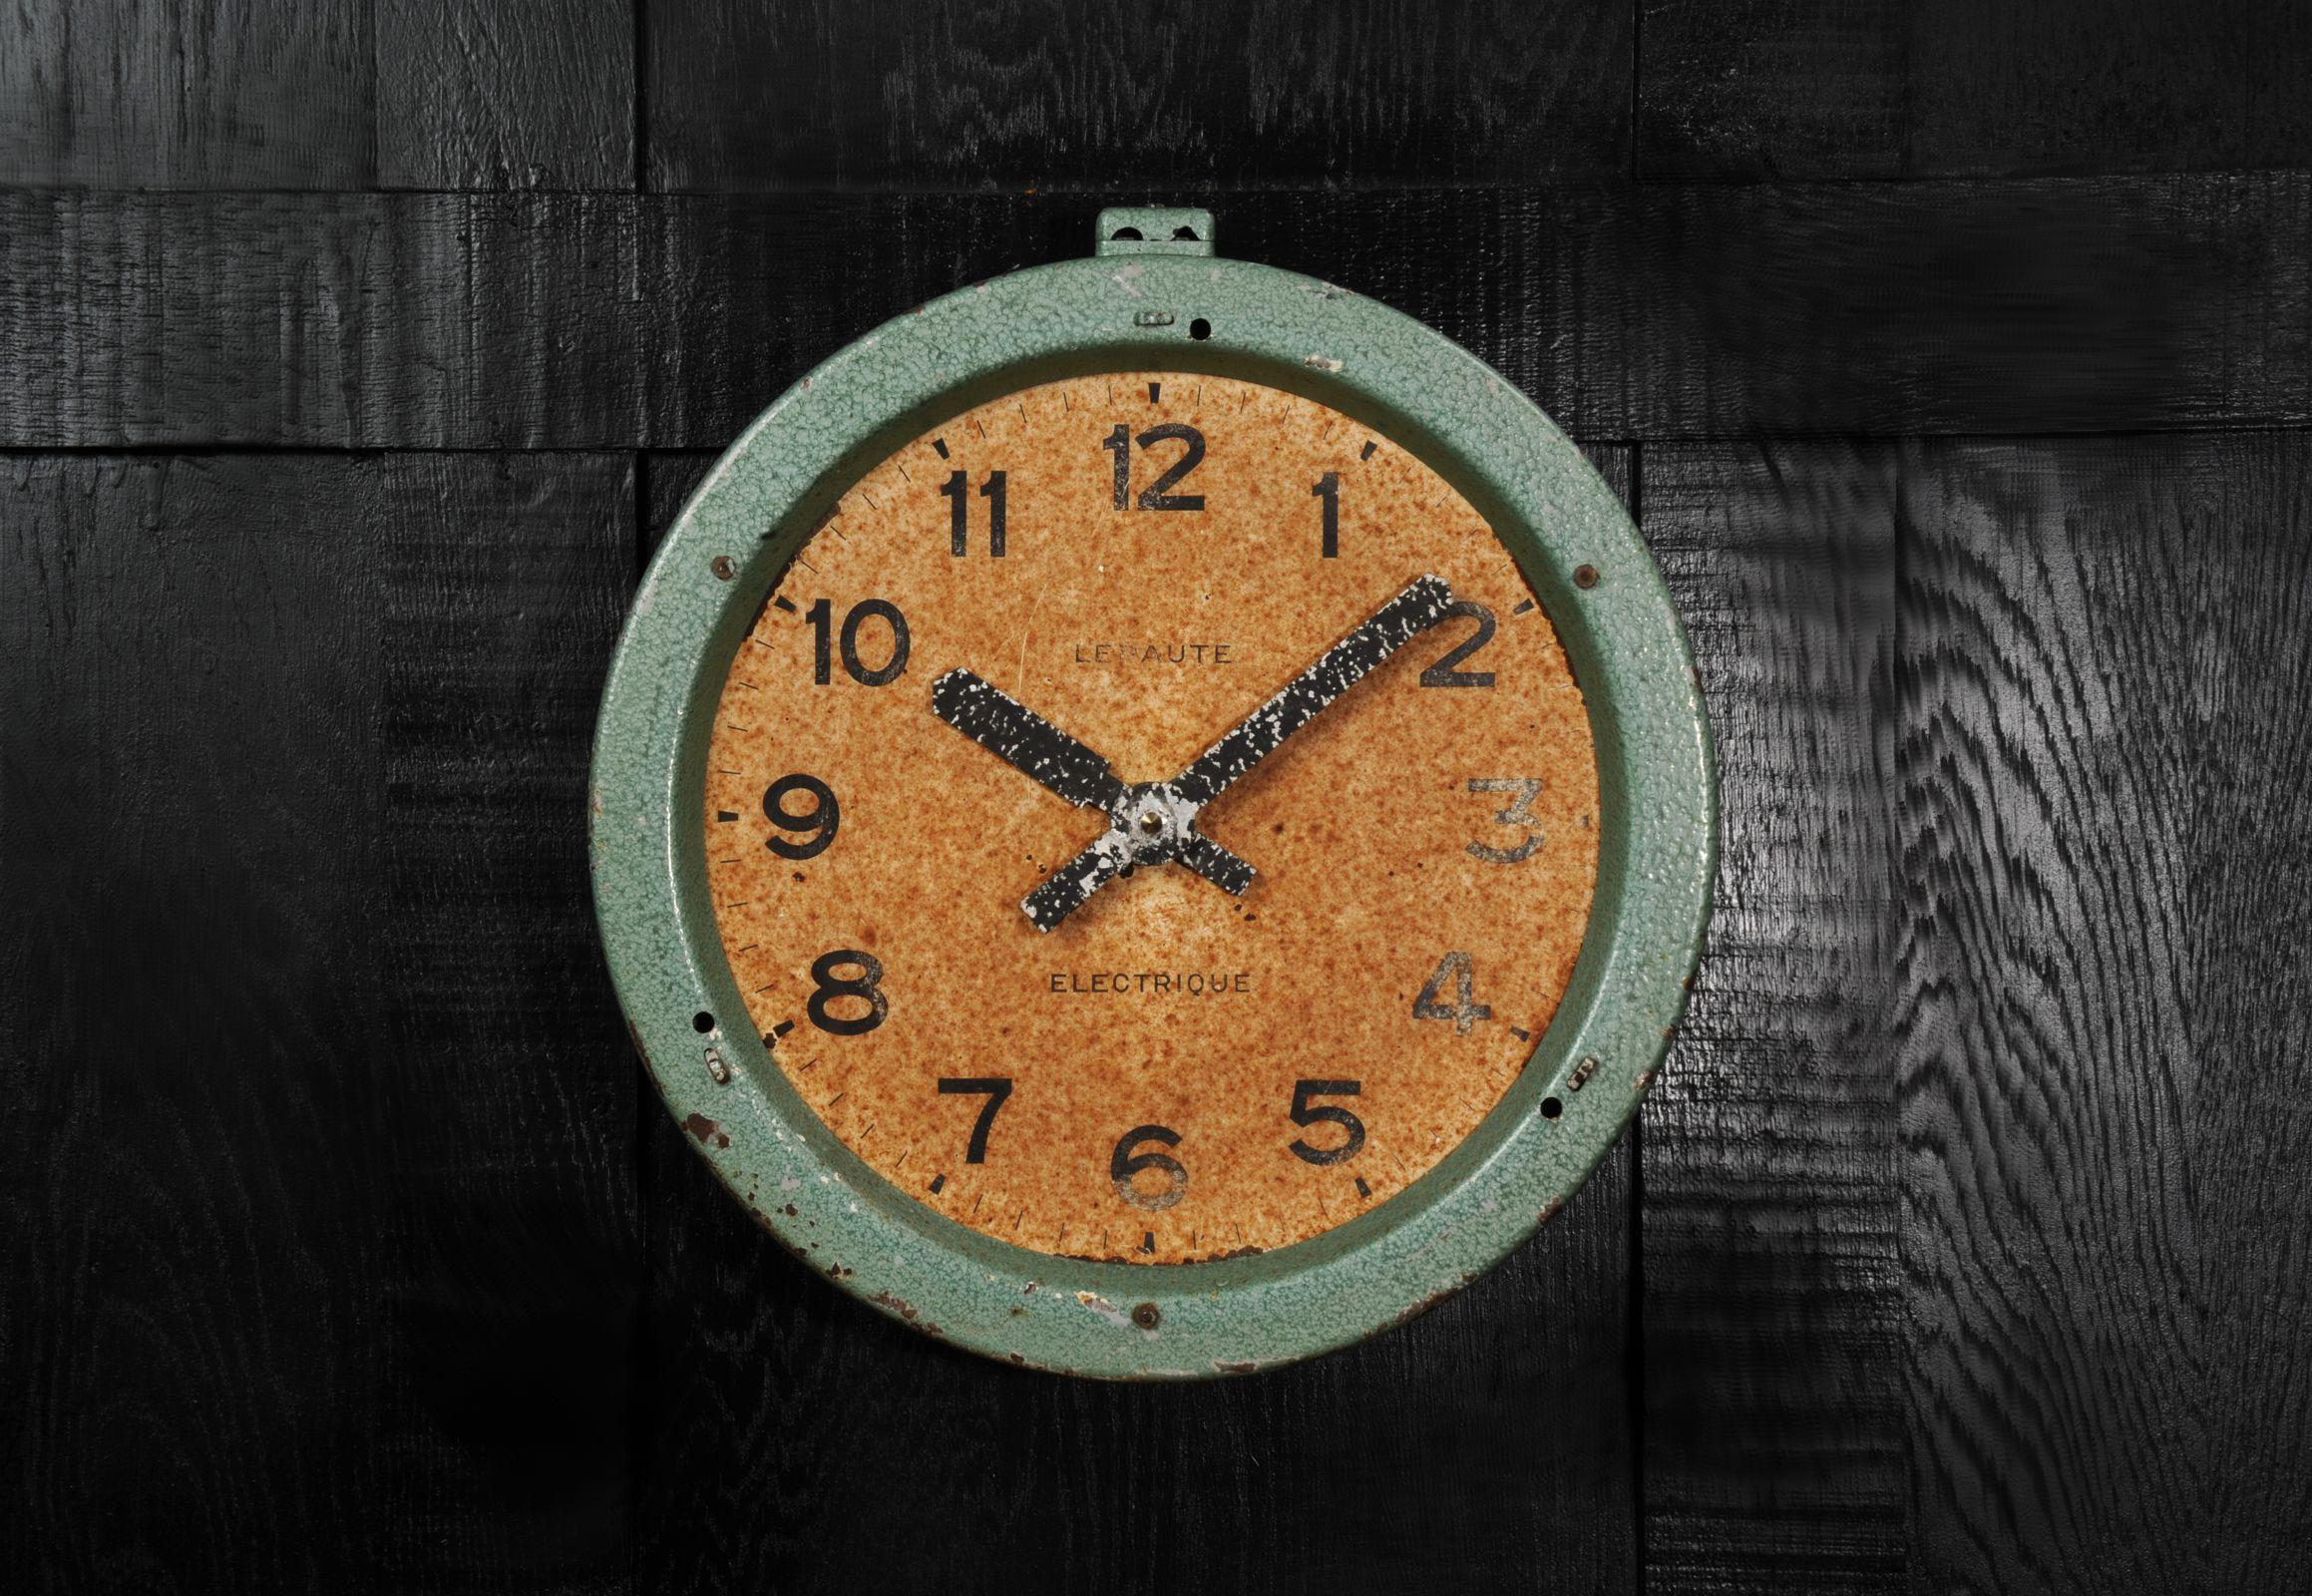 Une superbe horloge industrielle française vintage de la célèbre société Henri Lepaute. Trouvée abandonnée dans un bâtiment industriel français par notre acheteur, la boîte en émail vert abîmée et le cadran marqué par la rouille évoquent le